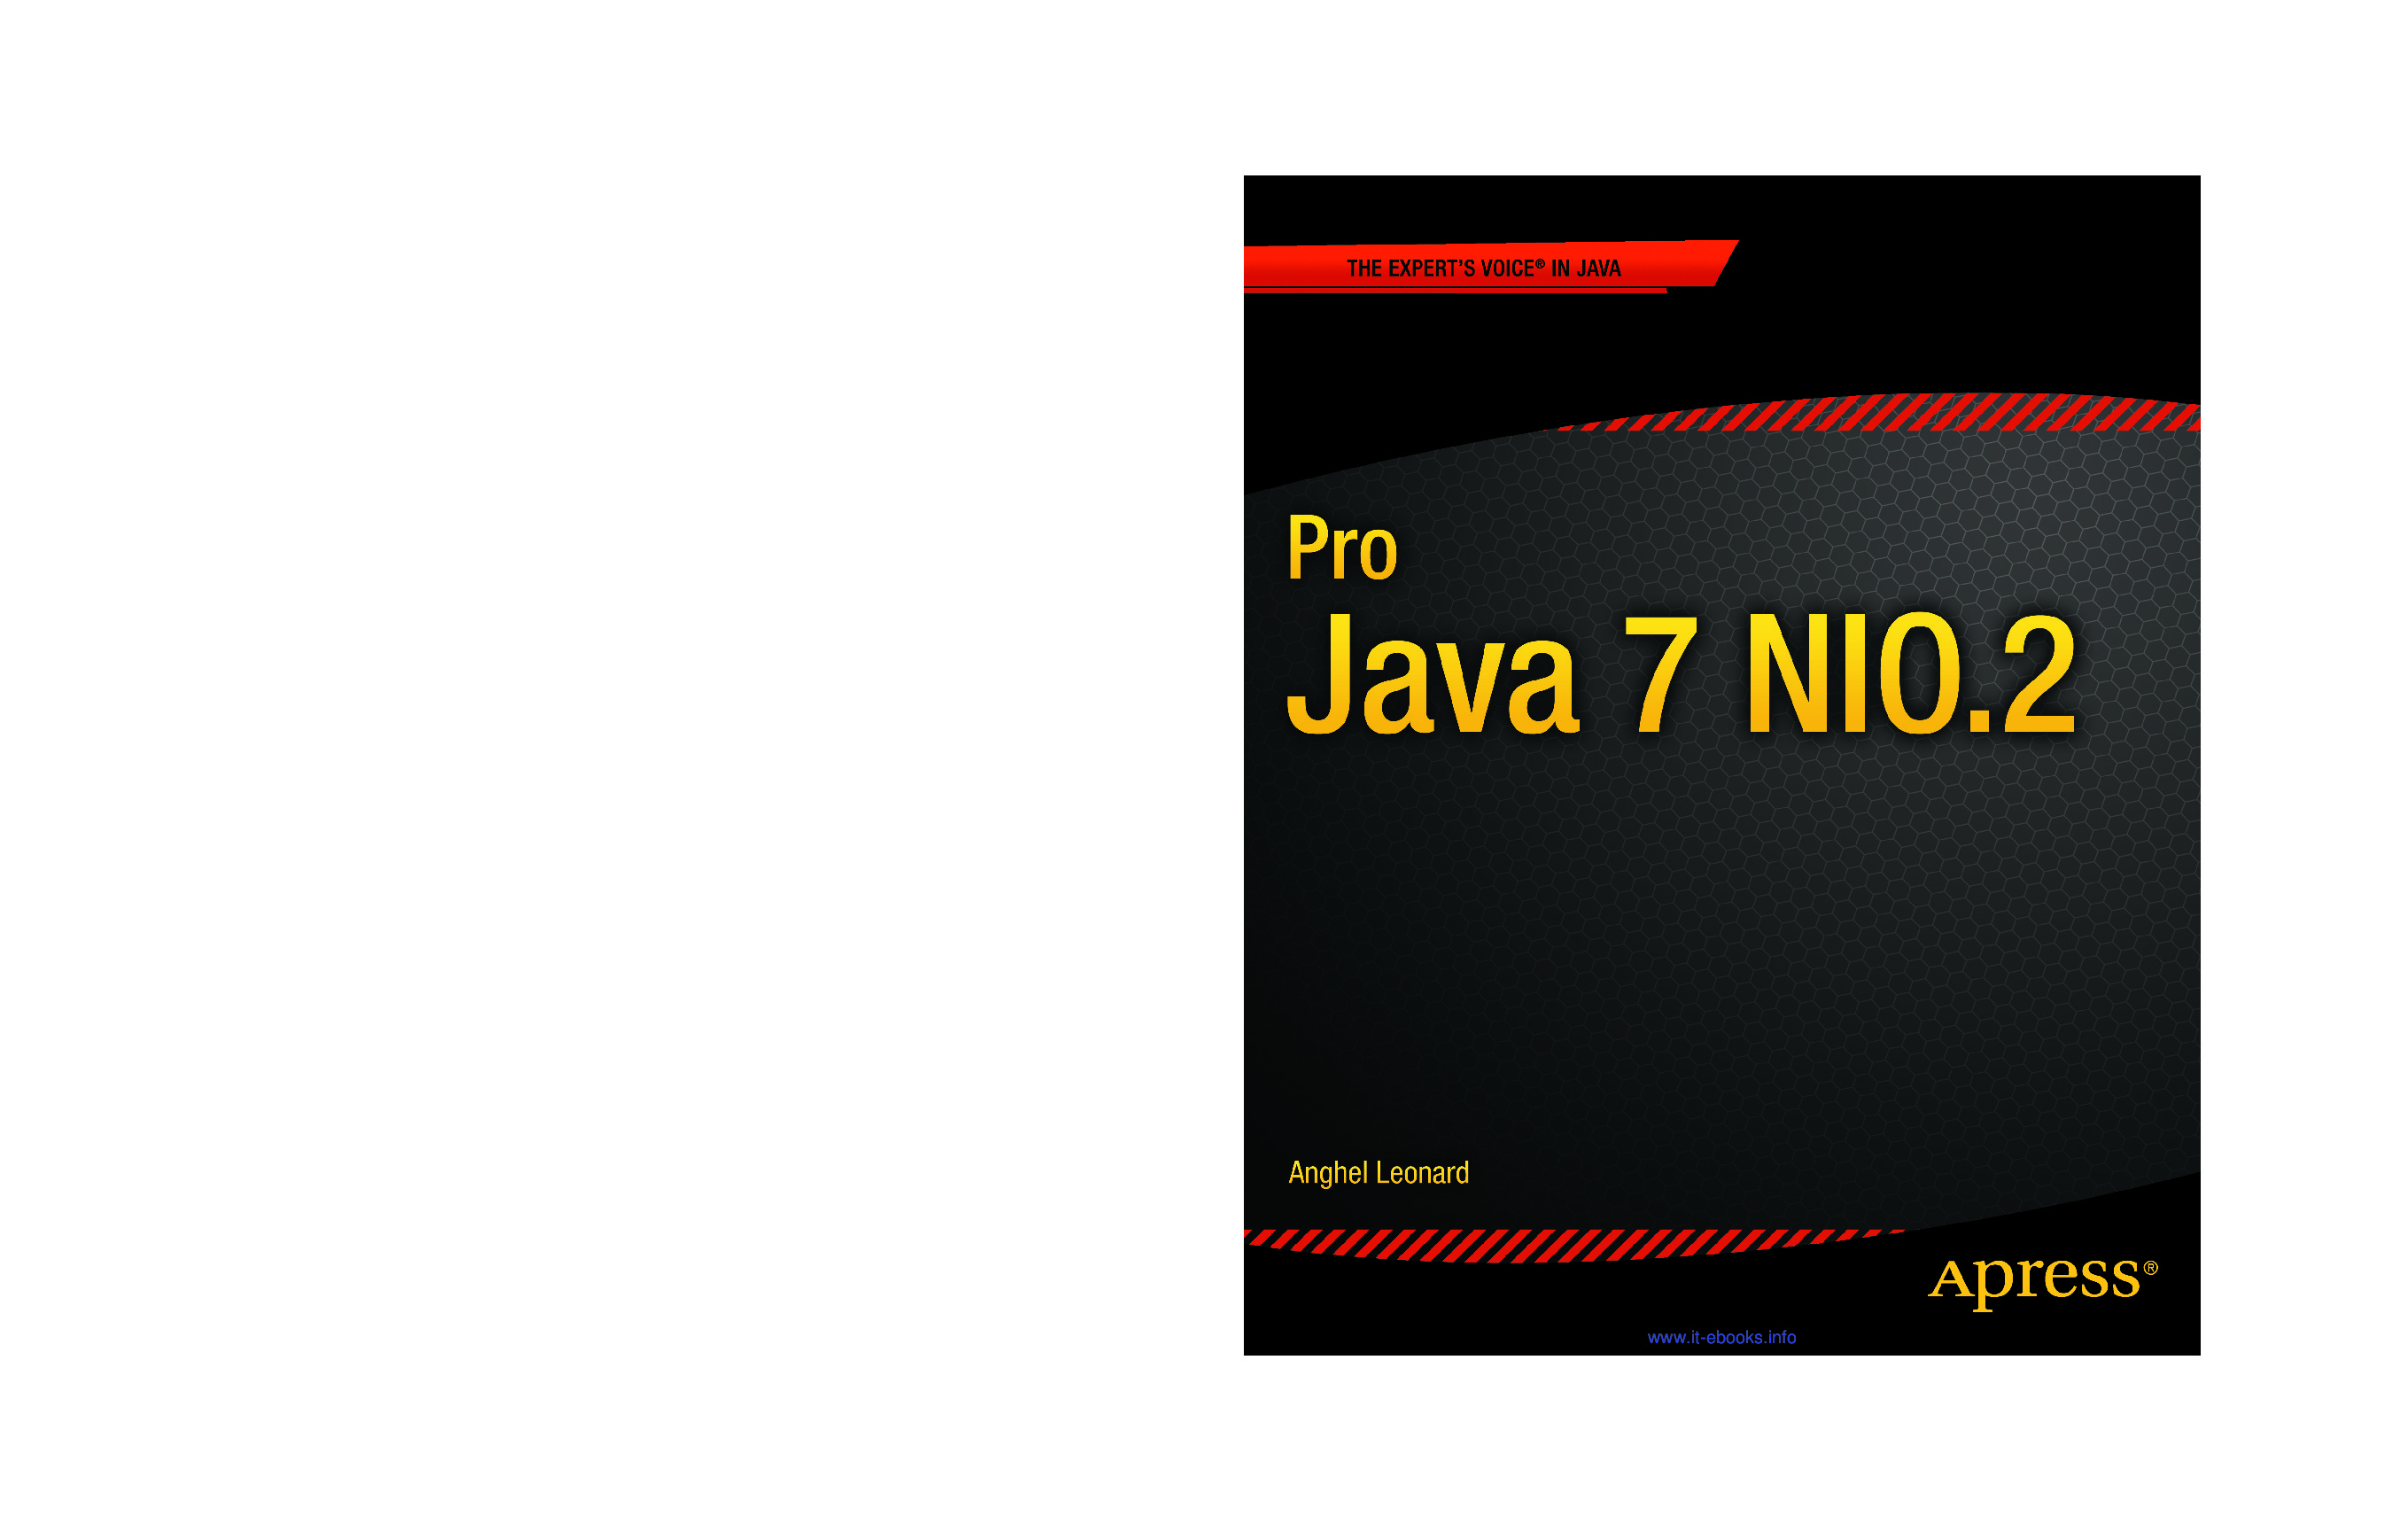 [JAVA][Pro Java 7 NIO.2]